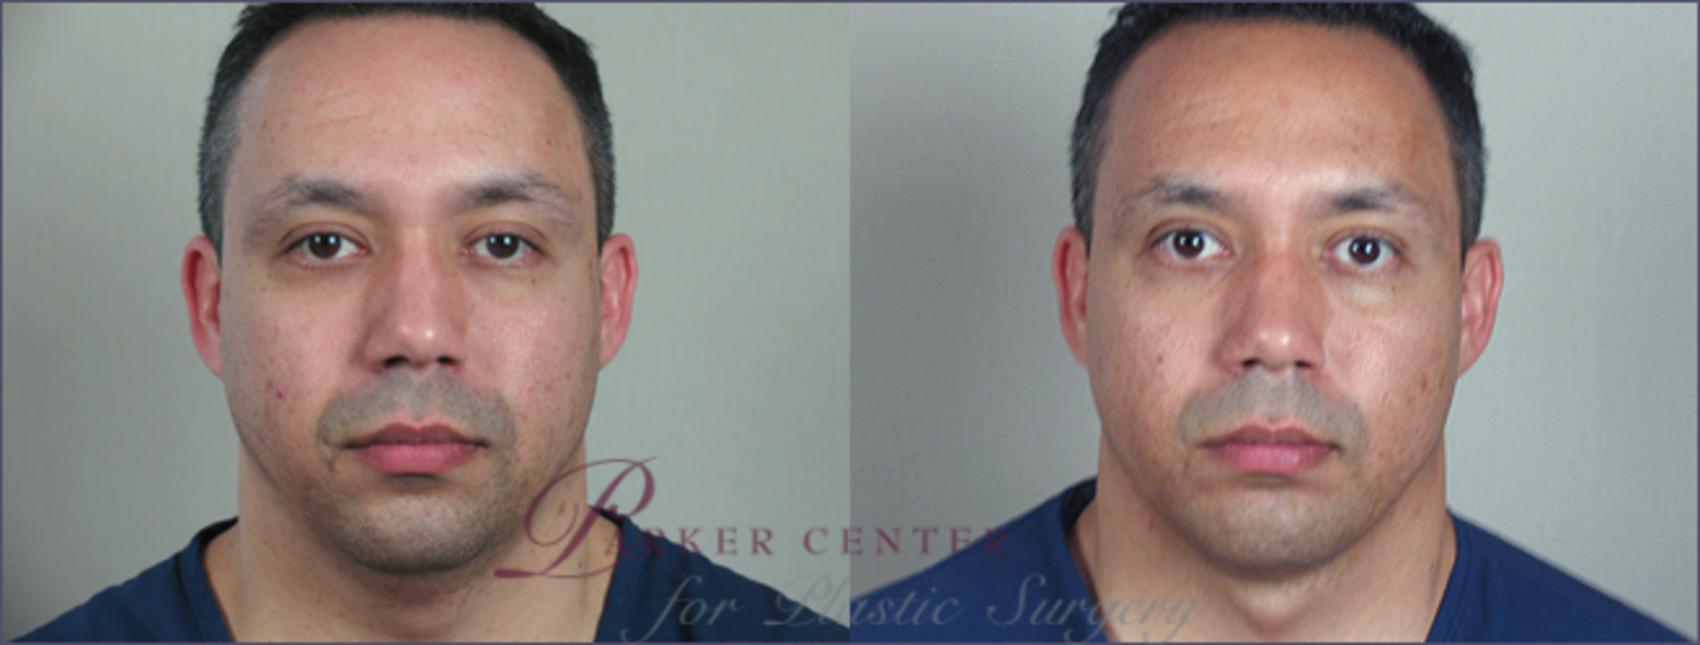 Neck Contouring Case 214 Before & After View #1 | Paramus, NJ | Parker Center for Plastic Surgery